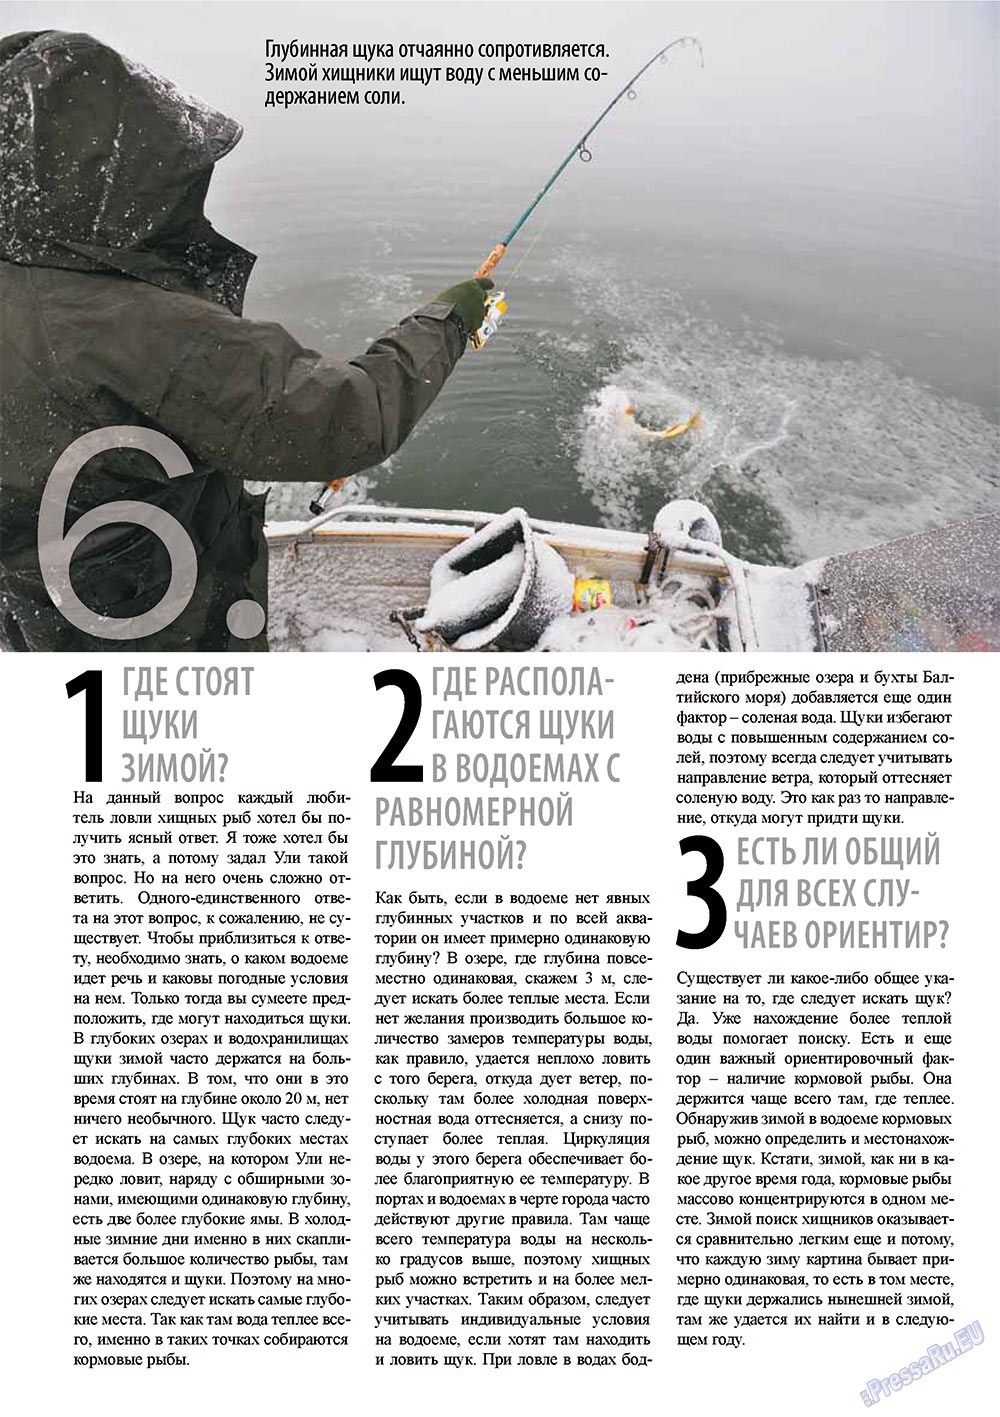 Рыбалка Plus, журнал. 2011 №2 стр.6